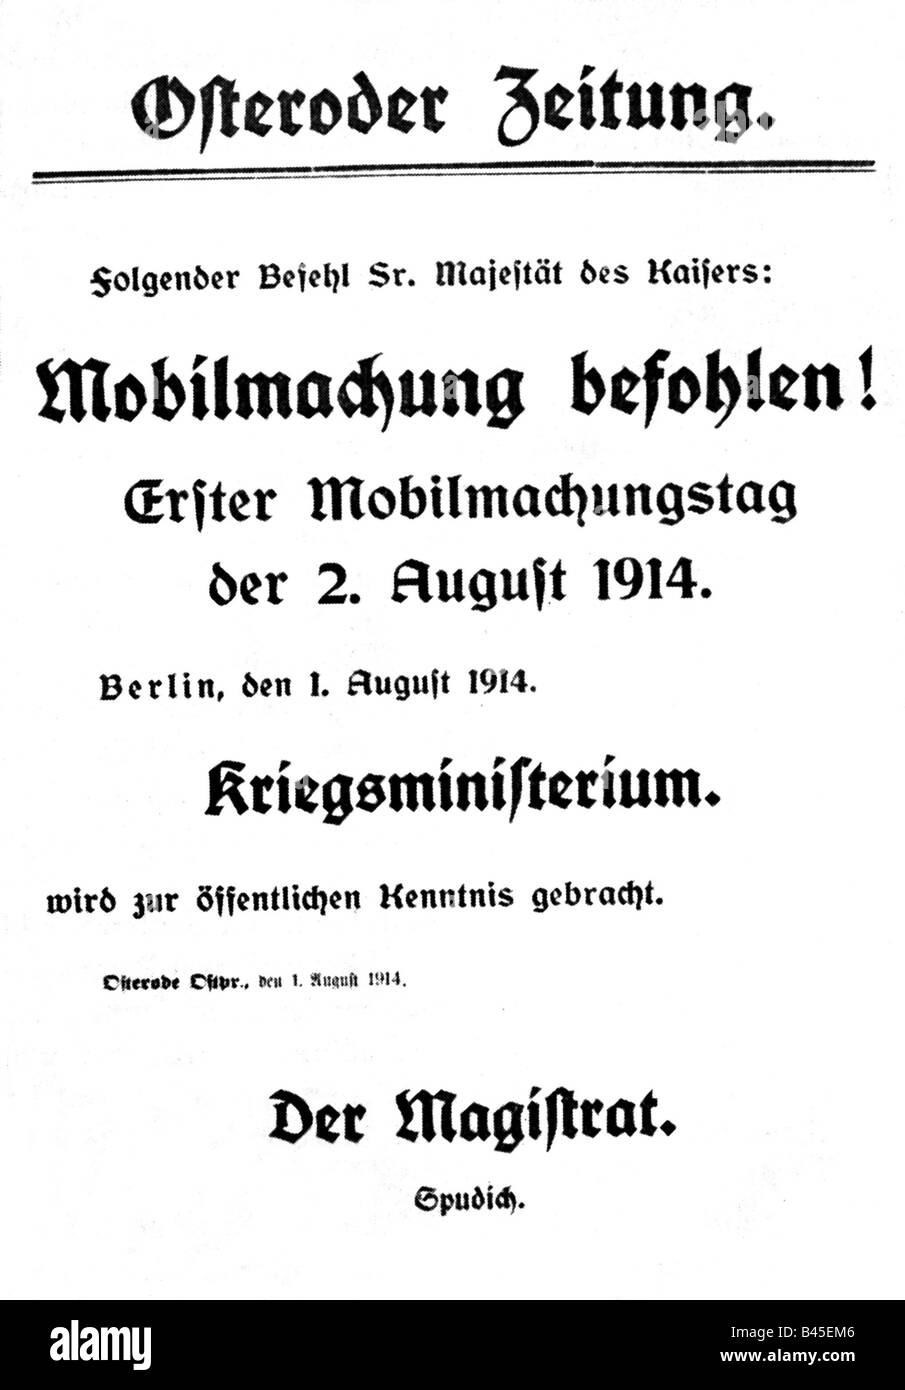 Événements, première Guerre mondiale / première Guerre mondiale, déclenchement de la guerre, 'Mobilmachung befohlen!' (mobilisation ordonnée!), bulletin spécial, 'Osteroder Zeitung', 1.8.1914, Banque D'Images